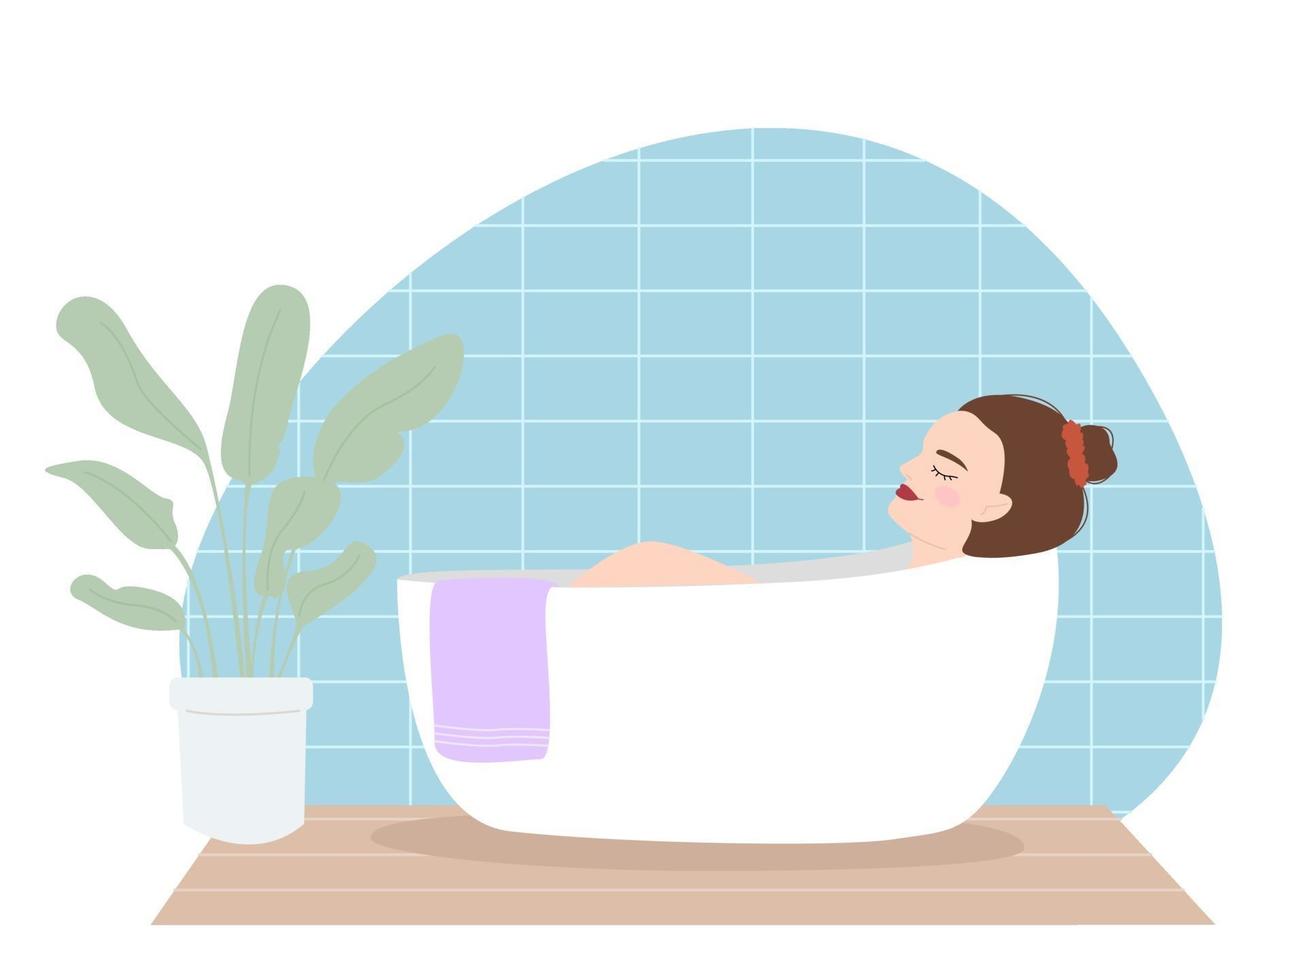 ilustração em vetor de uma linda jovem cansada toma banho após um dia agitado. vida cotidiana e vida cotidiana em um estilo plano. uma mulher relaxando no banheiro com uma planta doméstica de estilo escandinavo